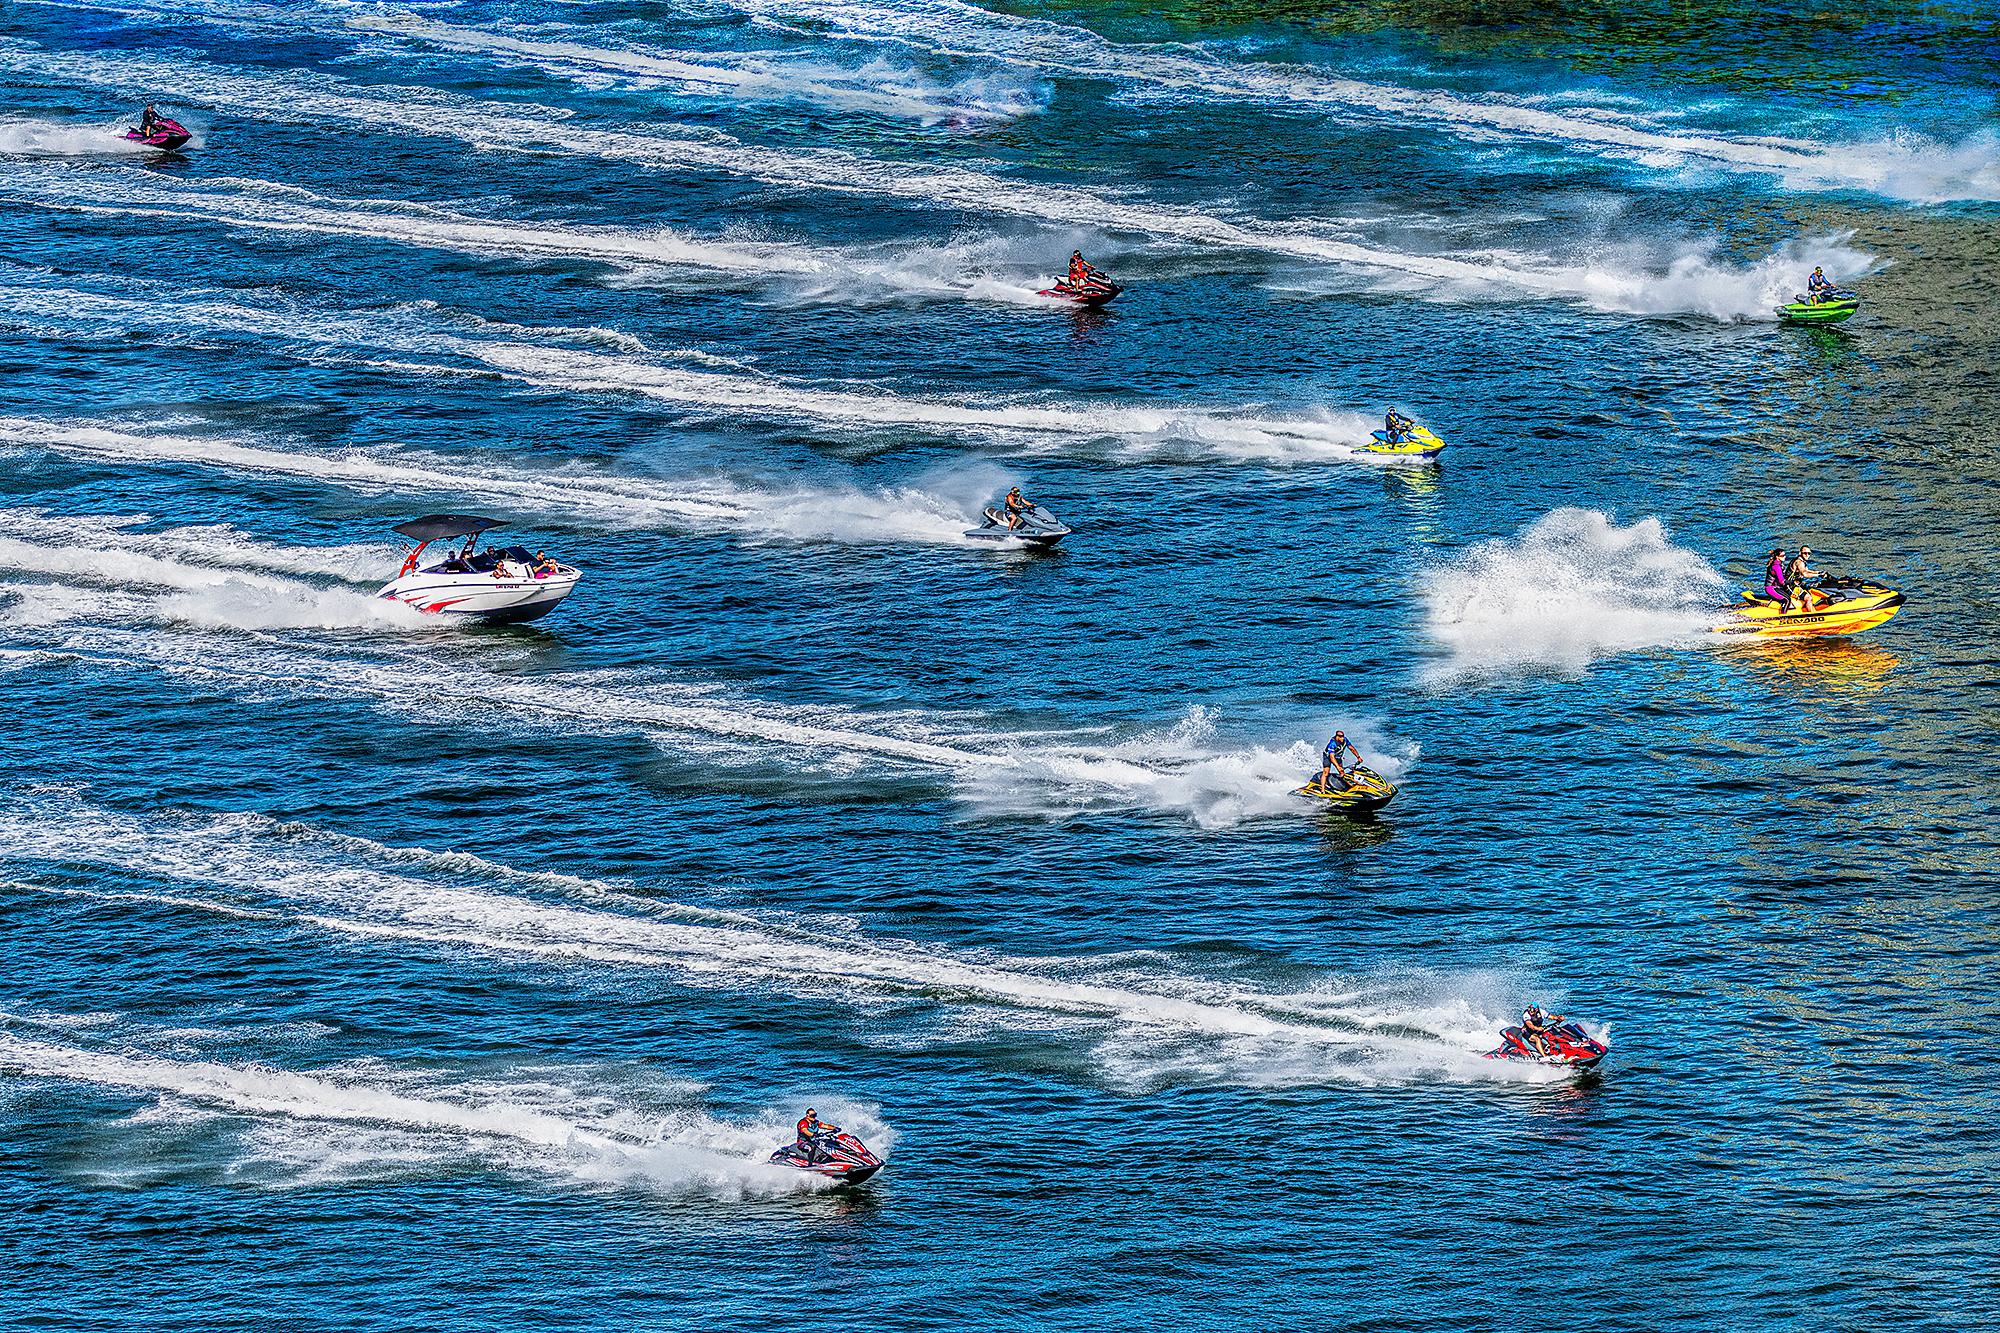 Mitchell Funk Abstract Photograph – Jet Ski-Wassersport-Actionswellenrennen in blauem Wasser